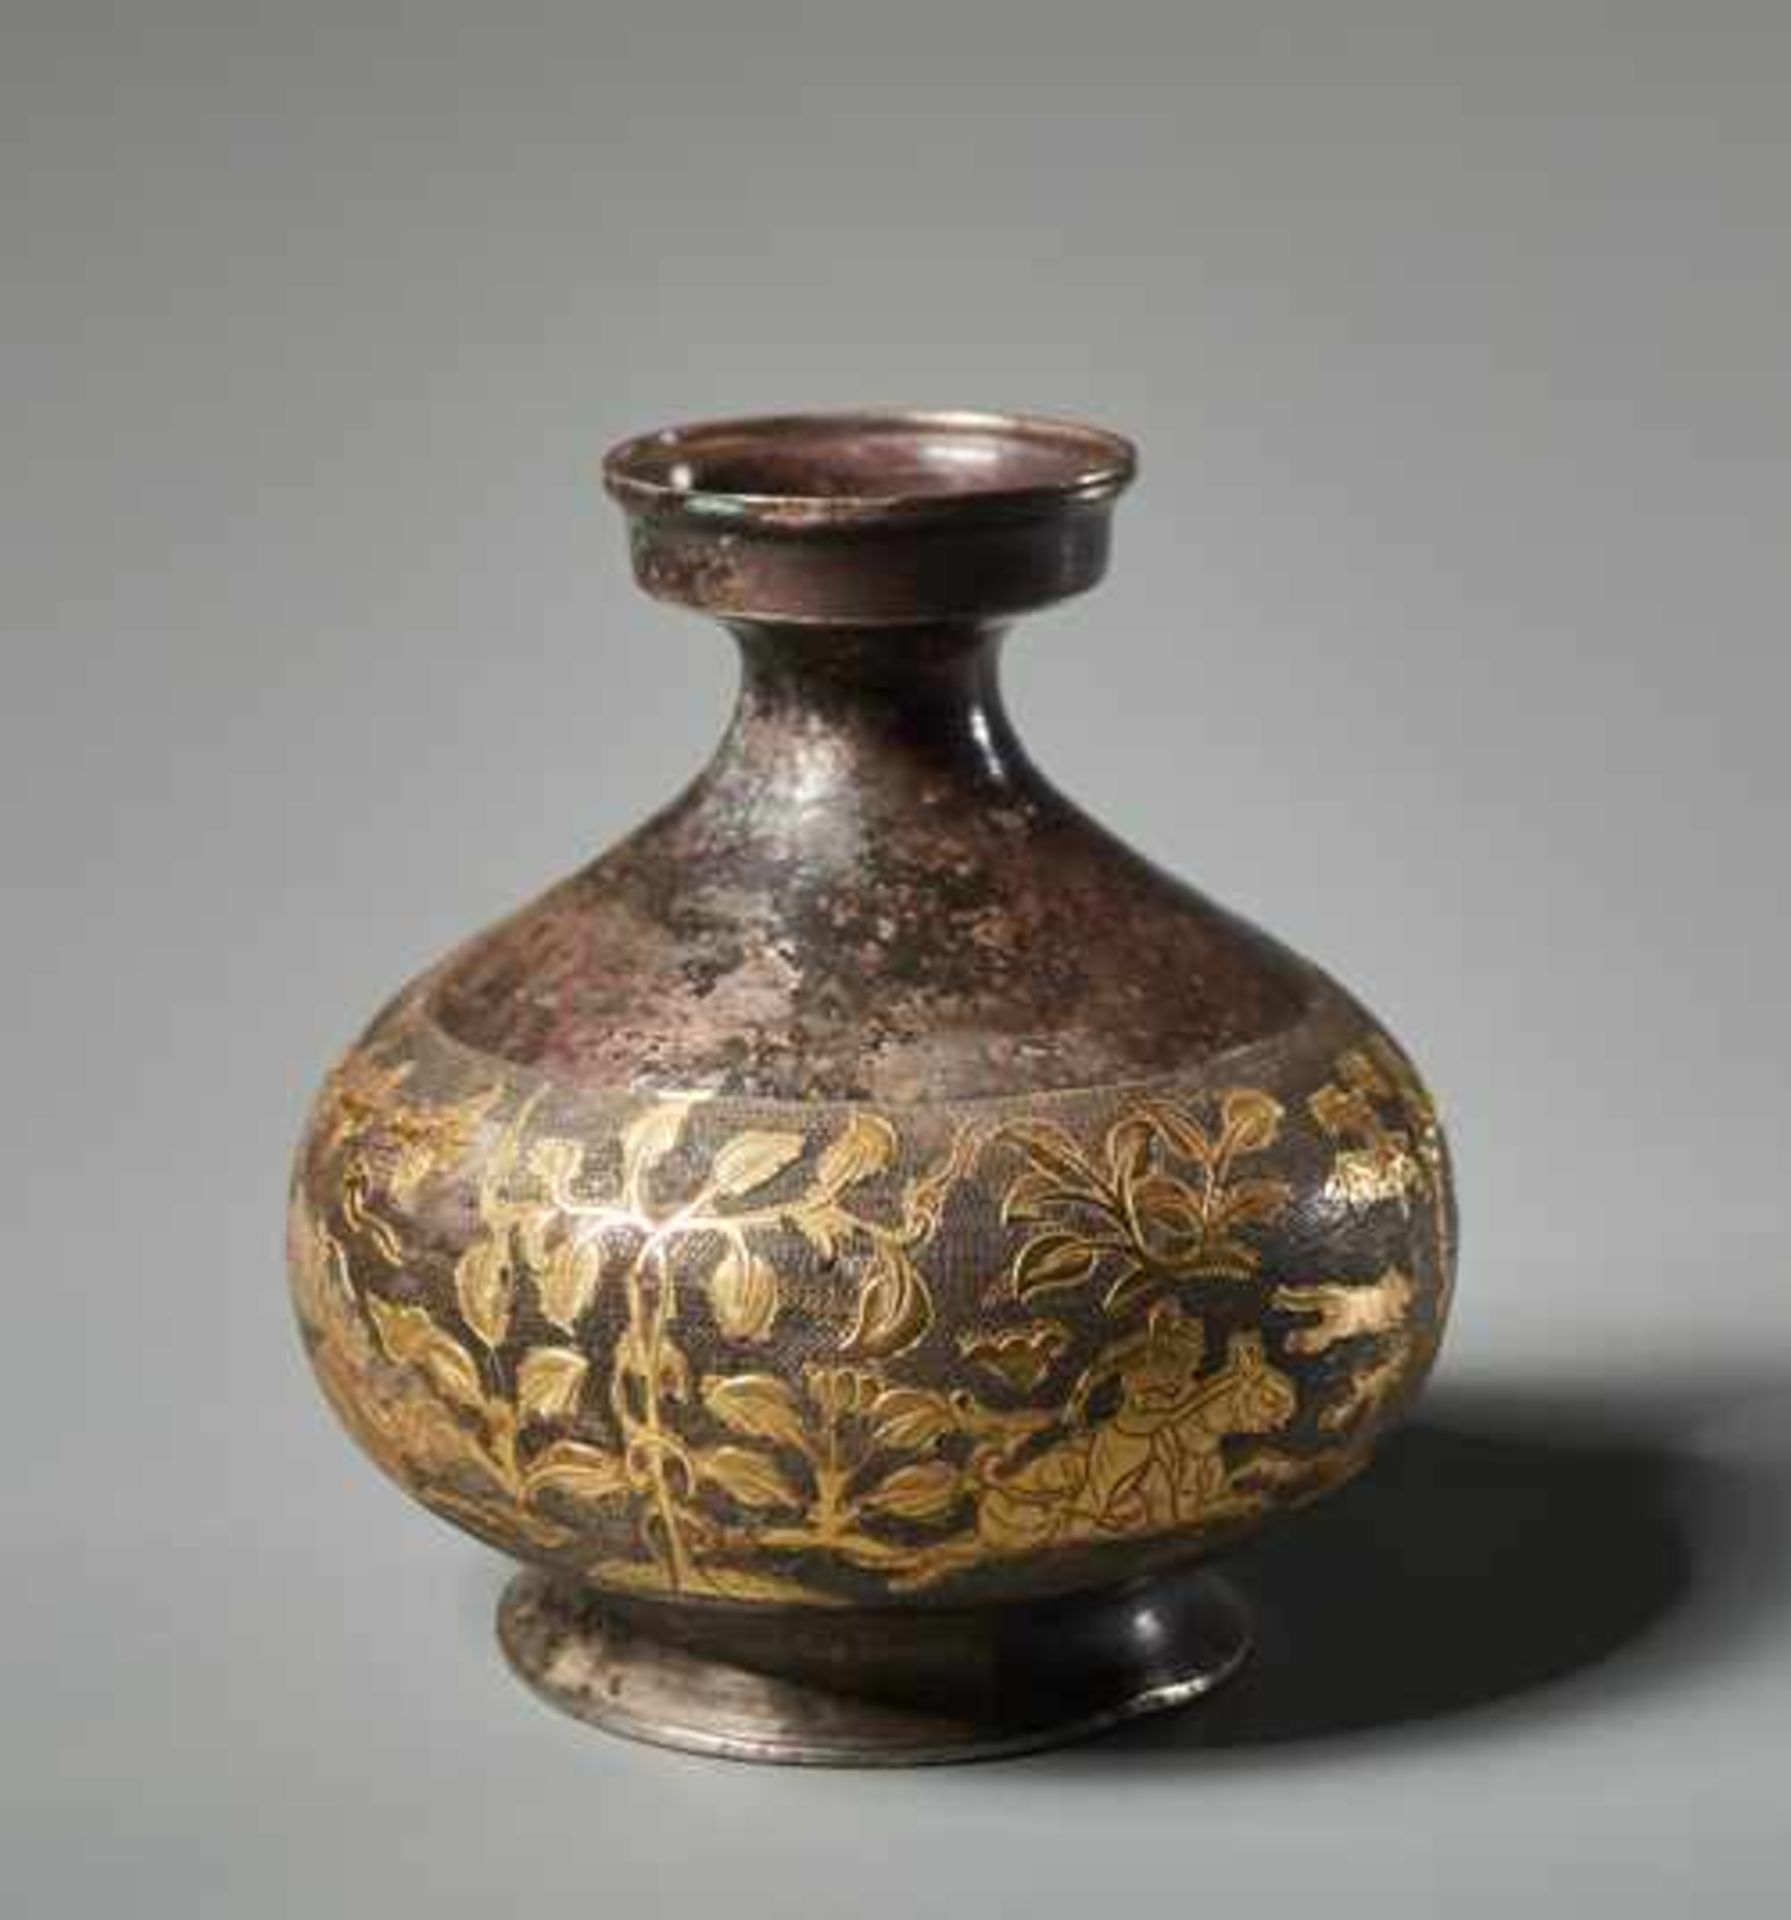 KLEINE VASE MIT JAGDSZENE Silber und Vergoldung. China, vermutlich Tang (618 - 907) Eine aparte - Image 4 of 6